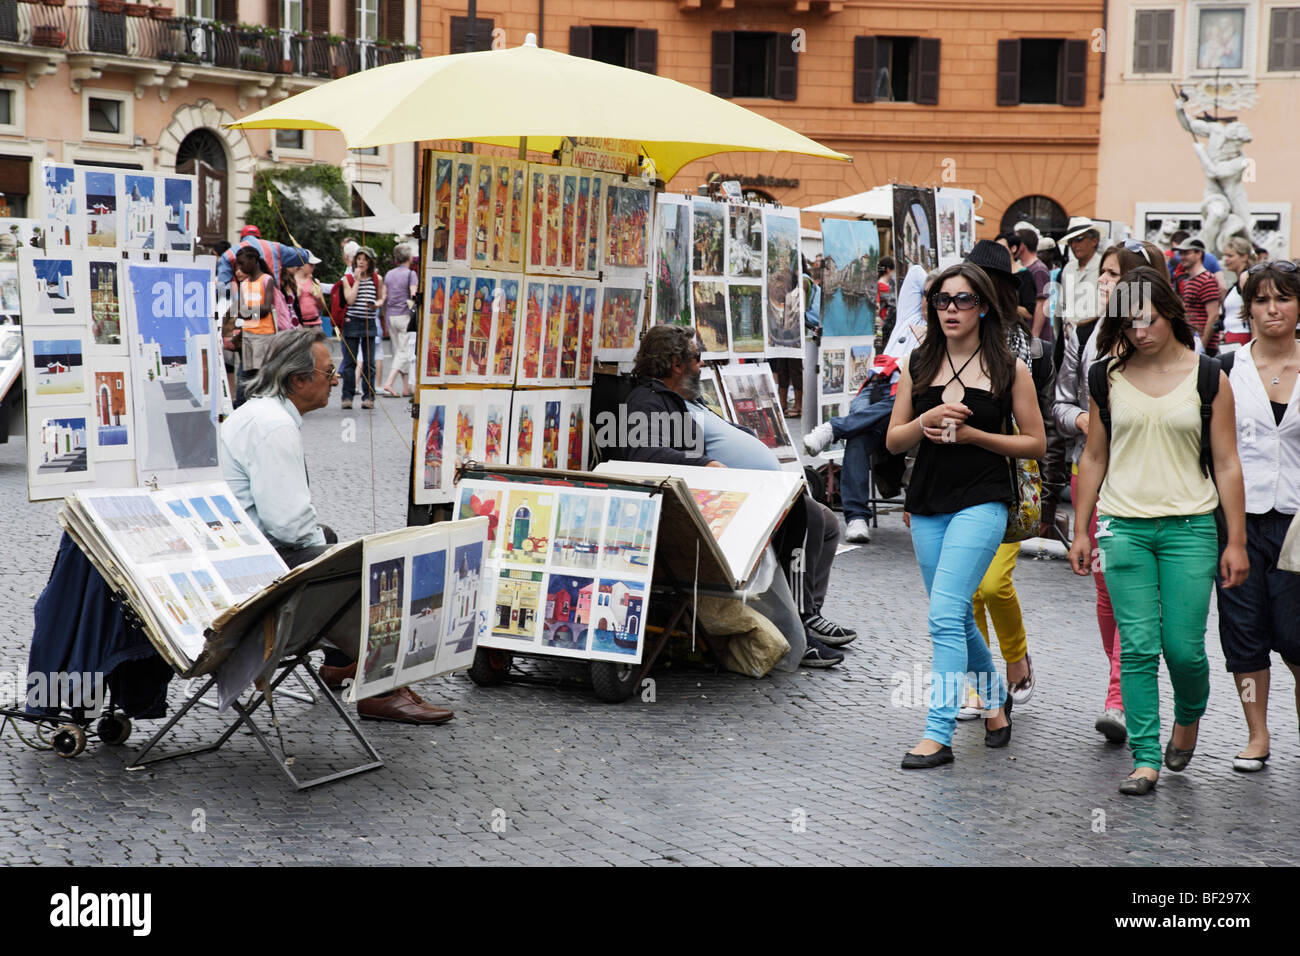 Art market at Piazza de Navona, Rome, Italy Stock Photo